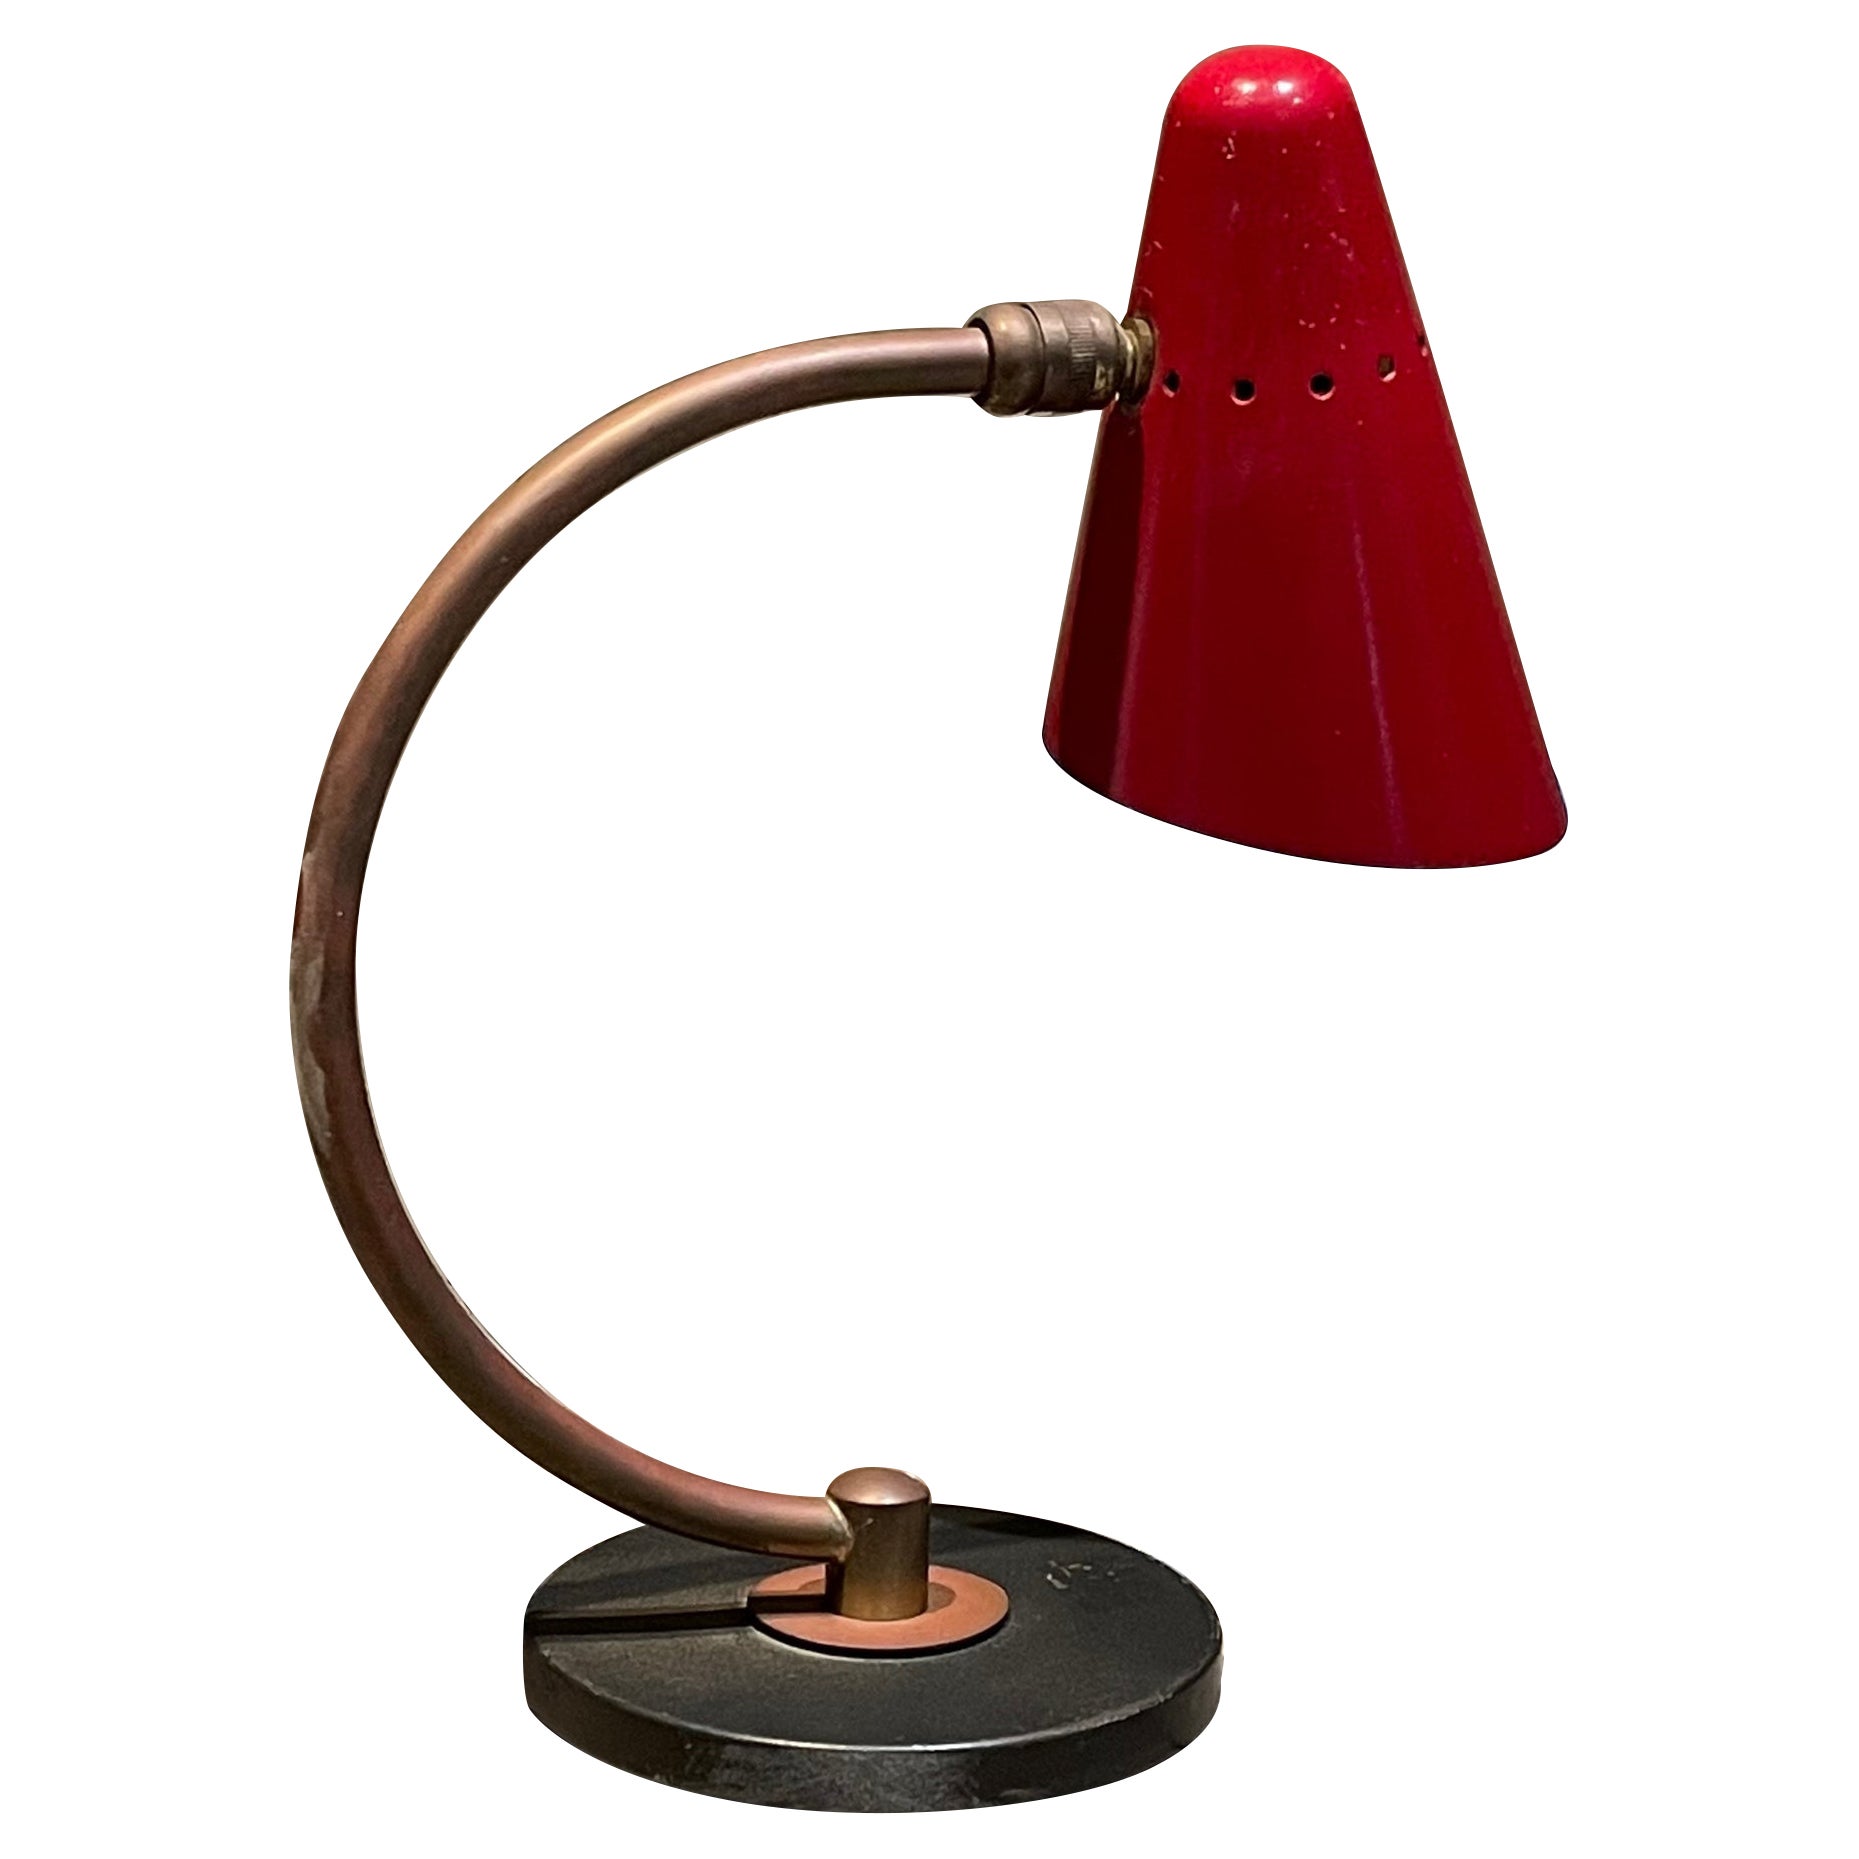 Jolie lampe de bureau française des années 1950 en forme de cône perforée rouge